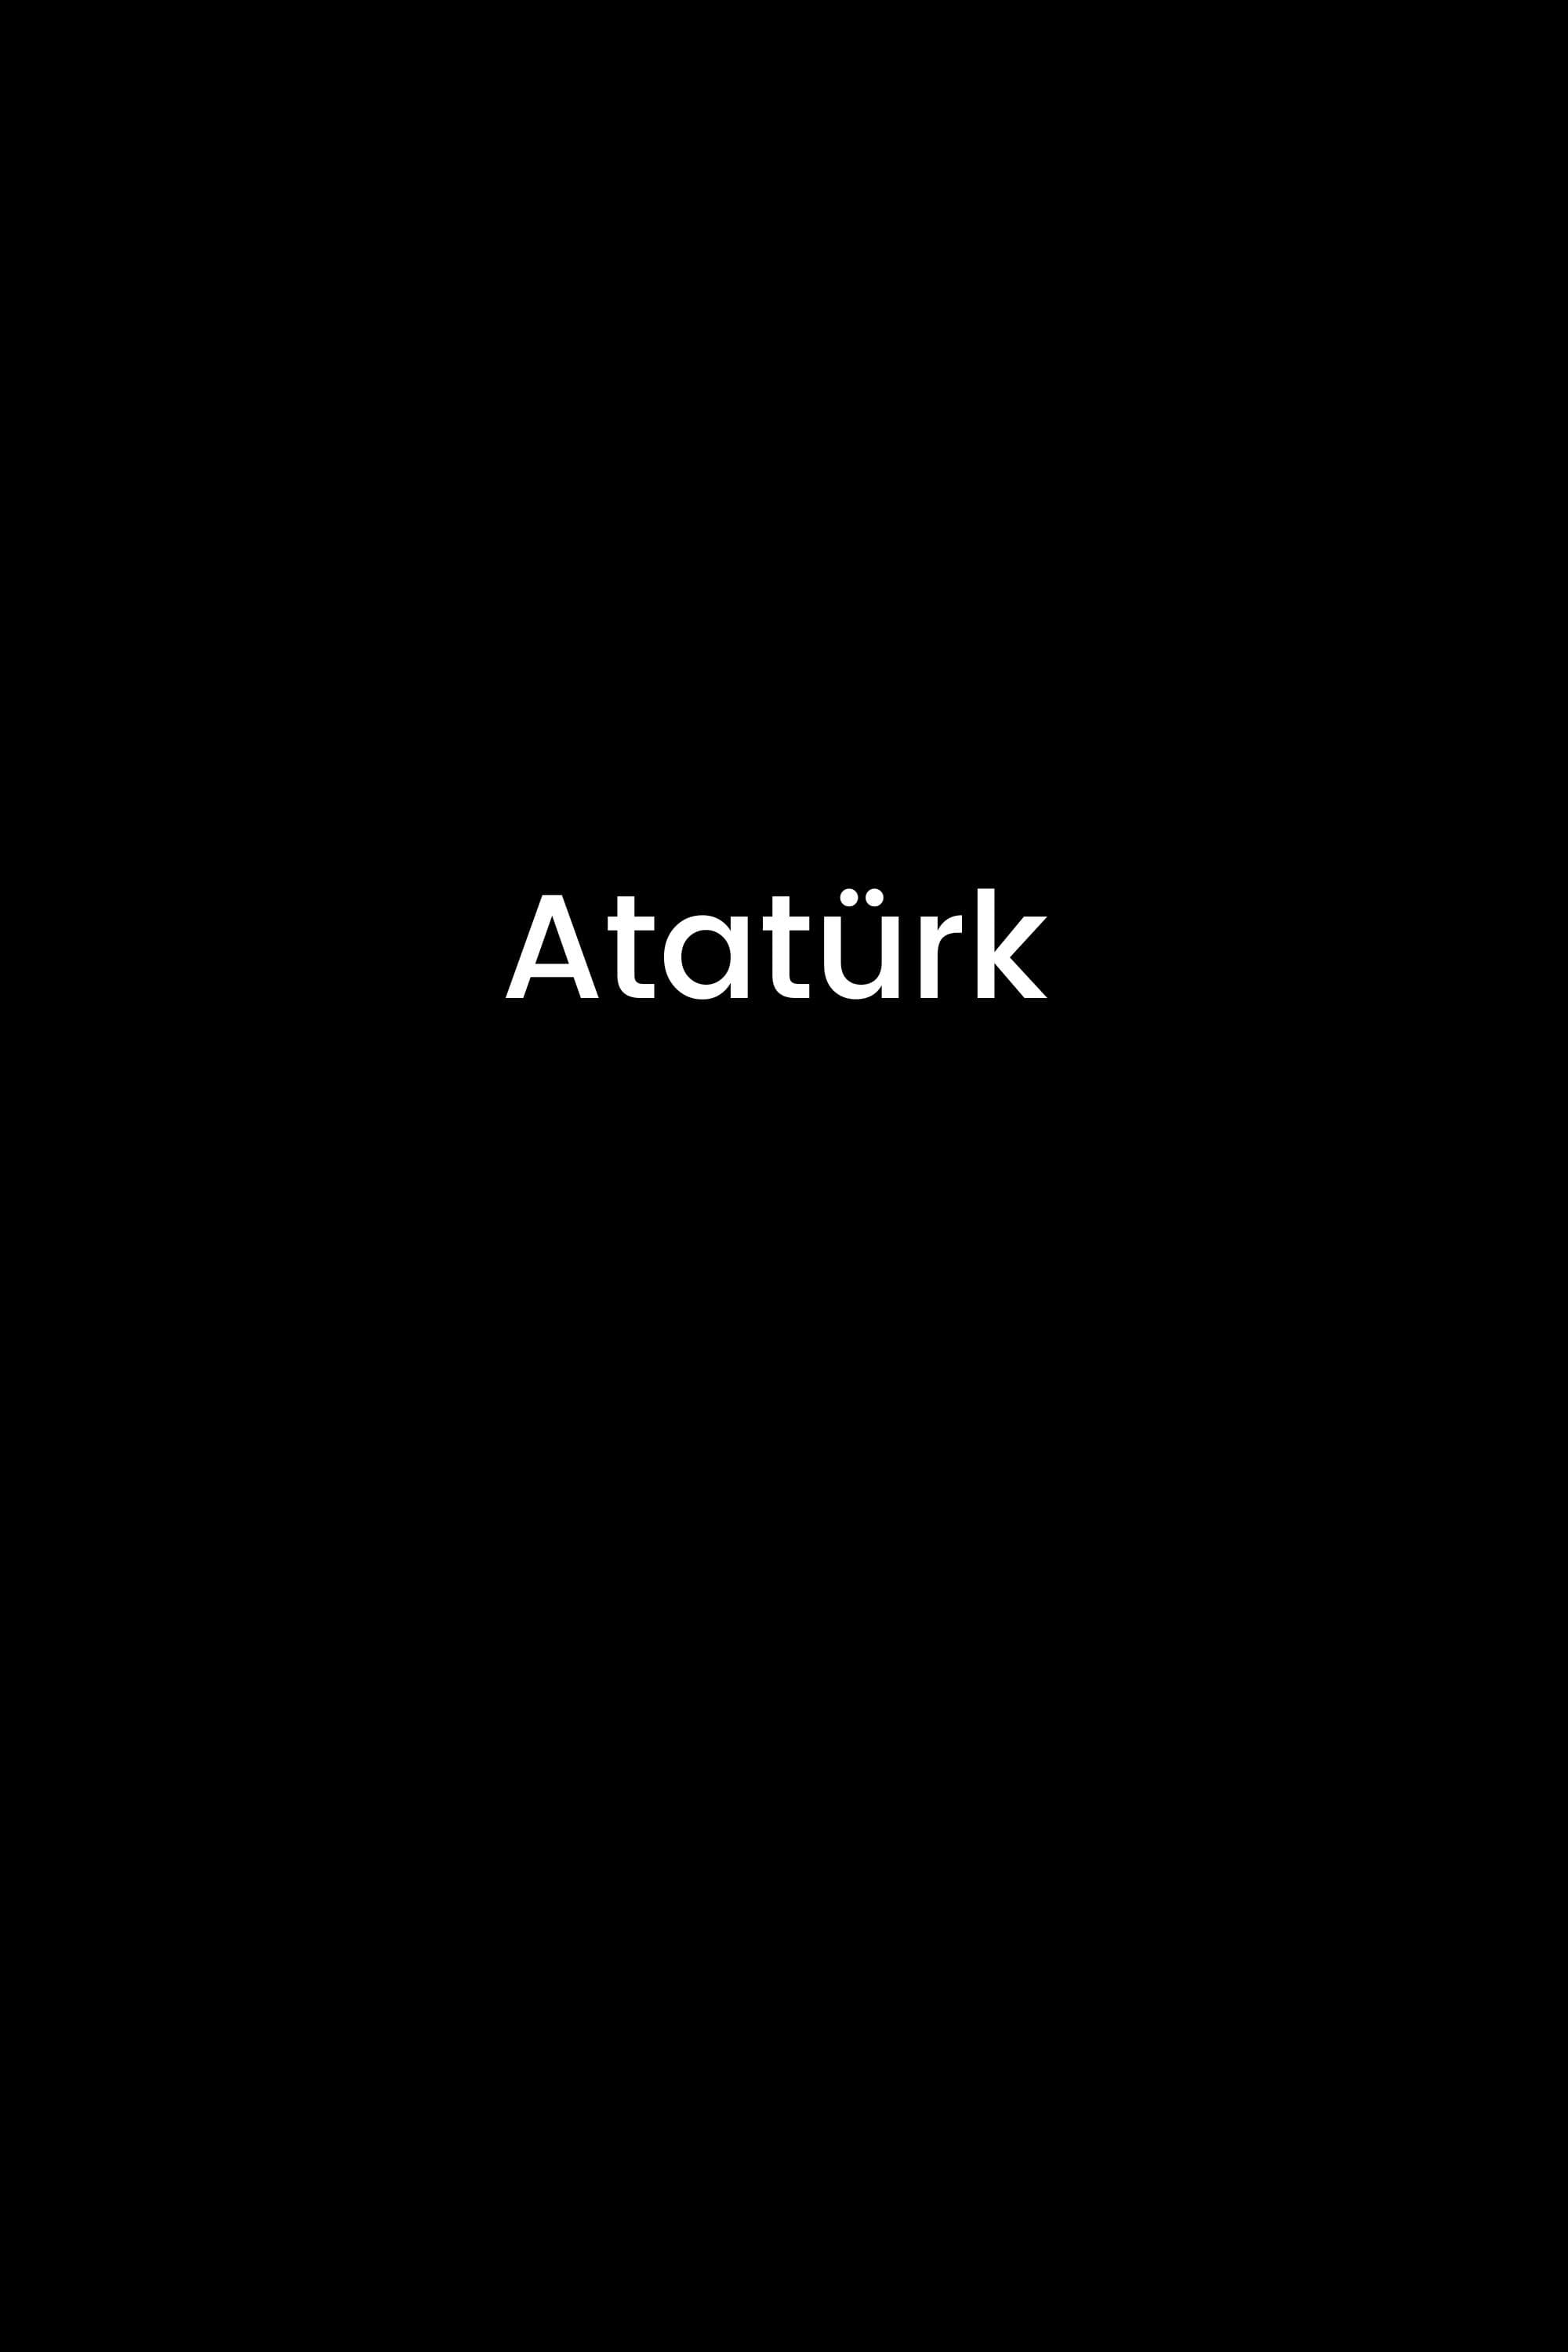 Atatürk 1881 - 1919